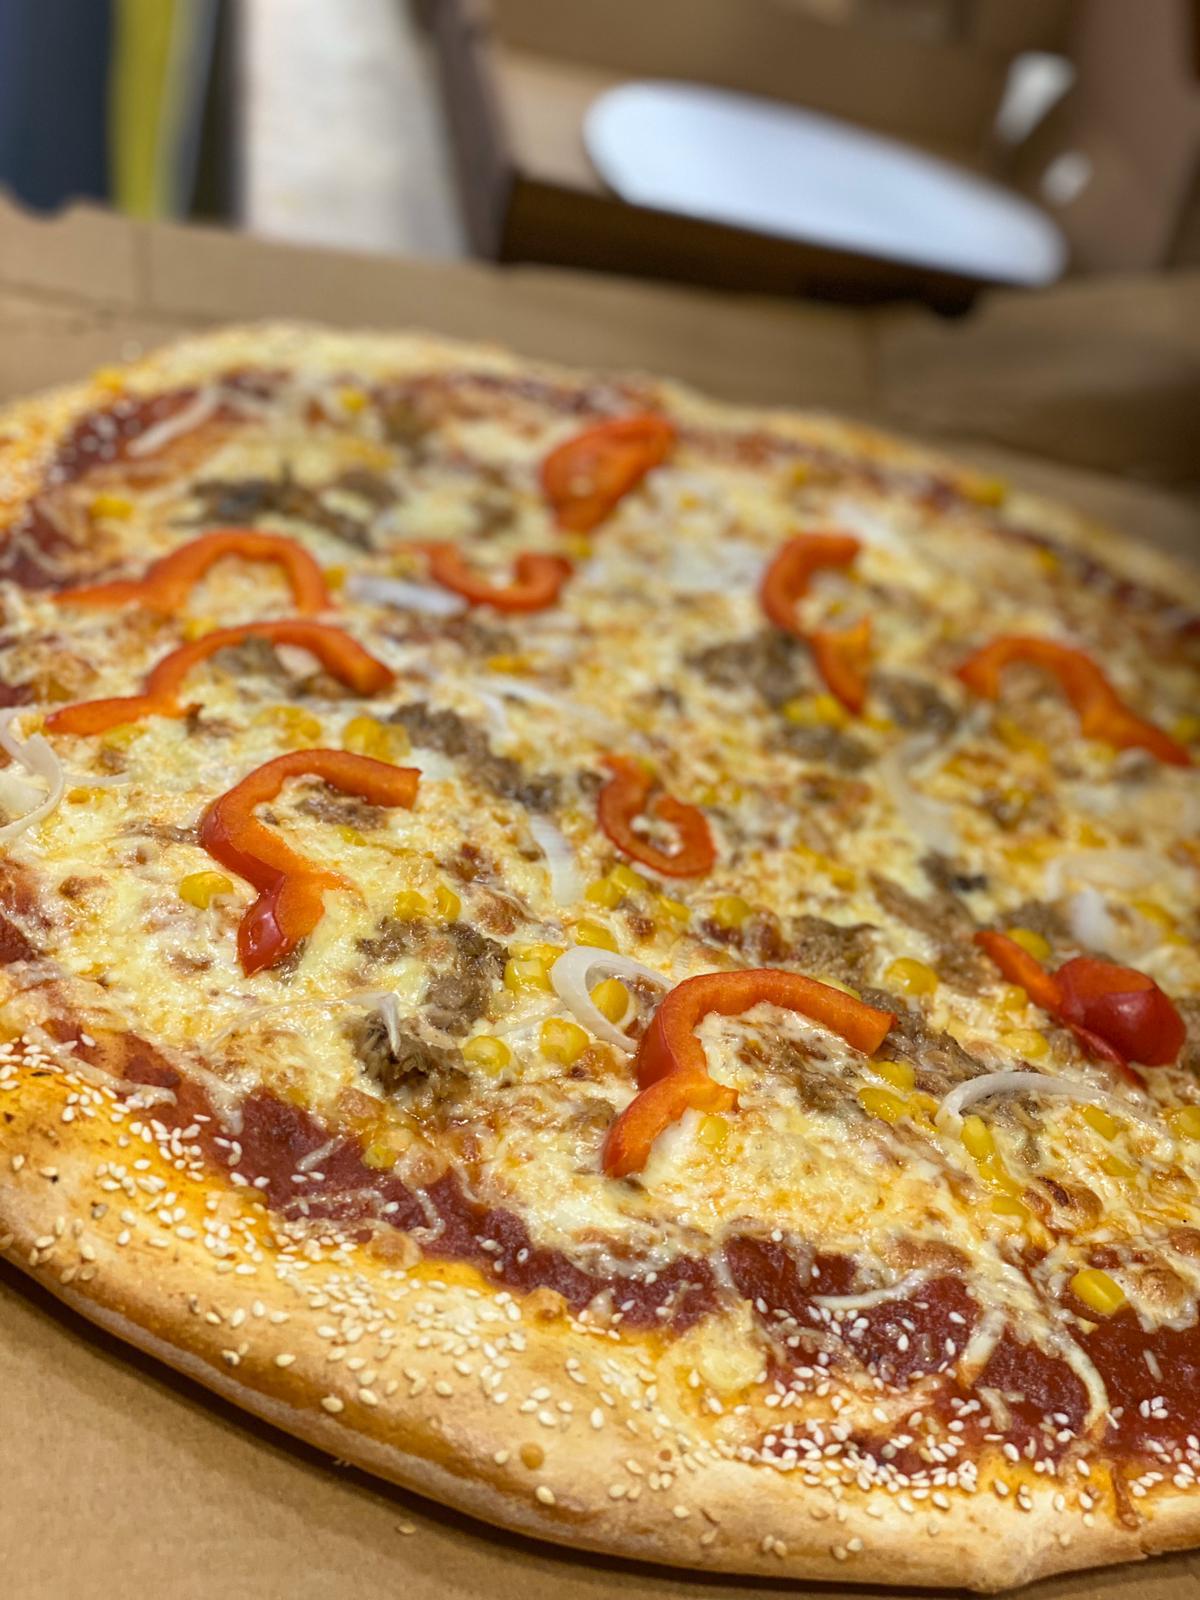 يوم البيتزا العالمي - تناولوا أشهى أنواع البيتزا فقط لدى بيتزا كالميرو